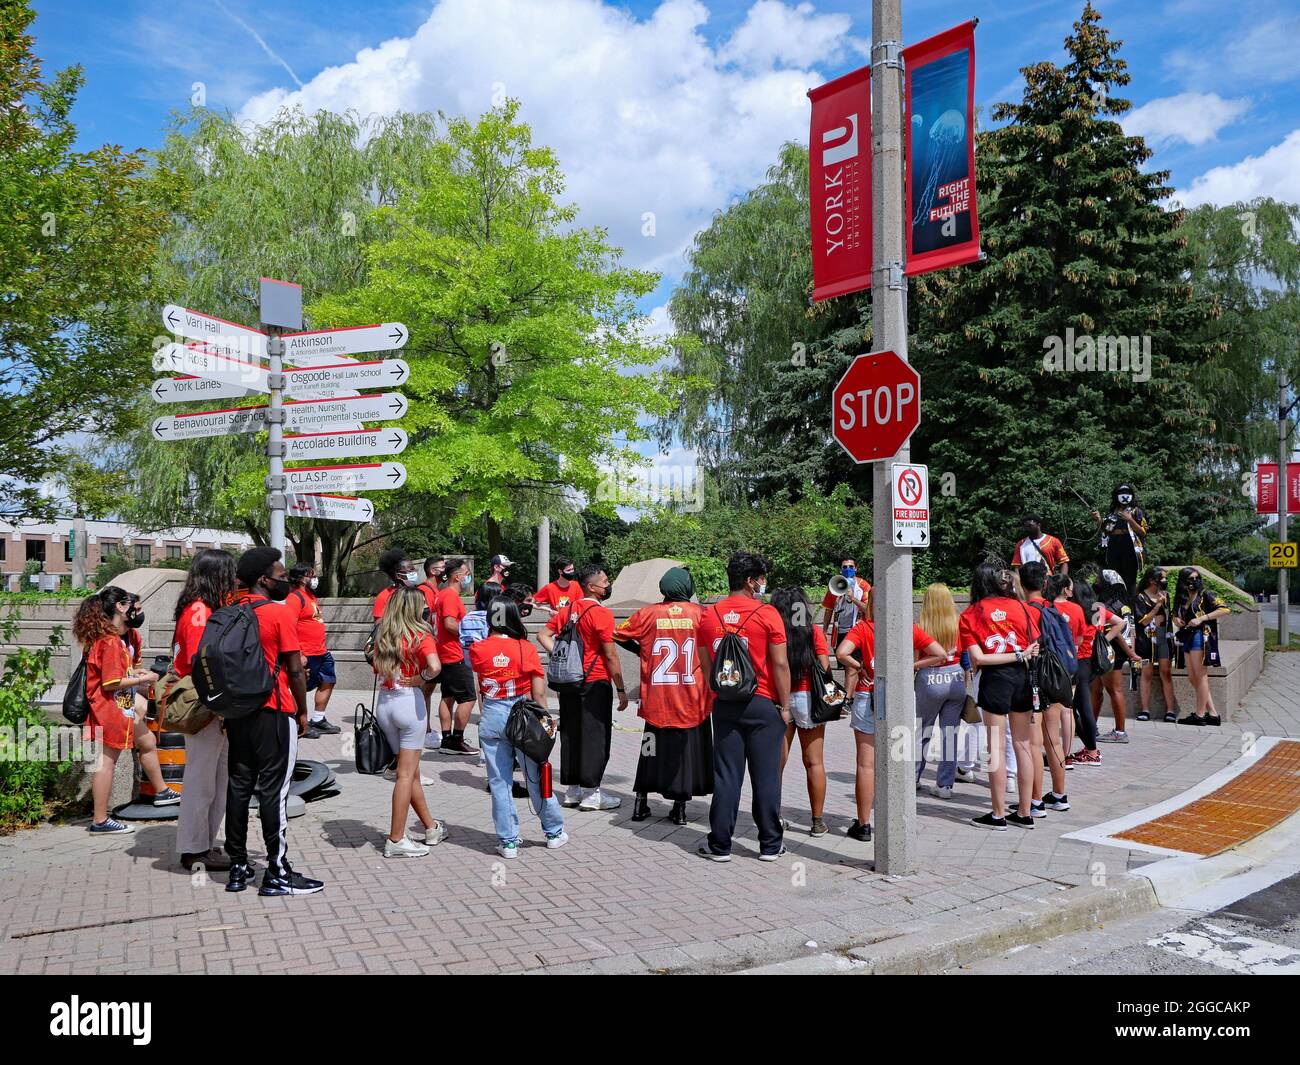 Toronto, Kanada - 30. August 2021: Frosh Week an der York University, um neue Studenten auf dem Campus vorzustellen, mit Gesichtsmasken aufgrund der Pandemie. Stockfoto